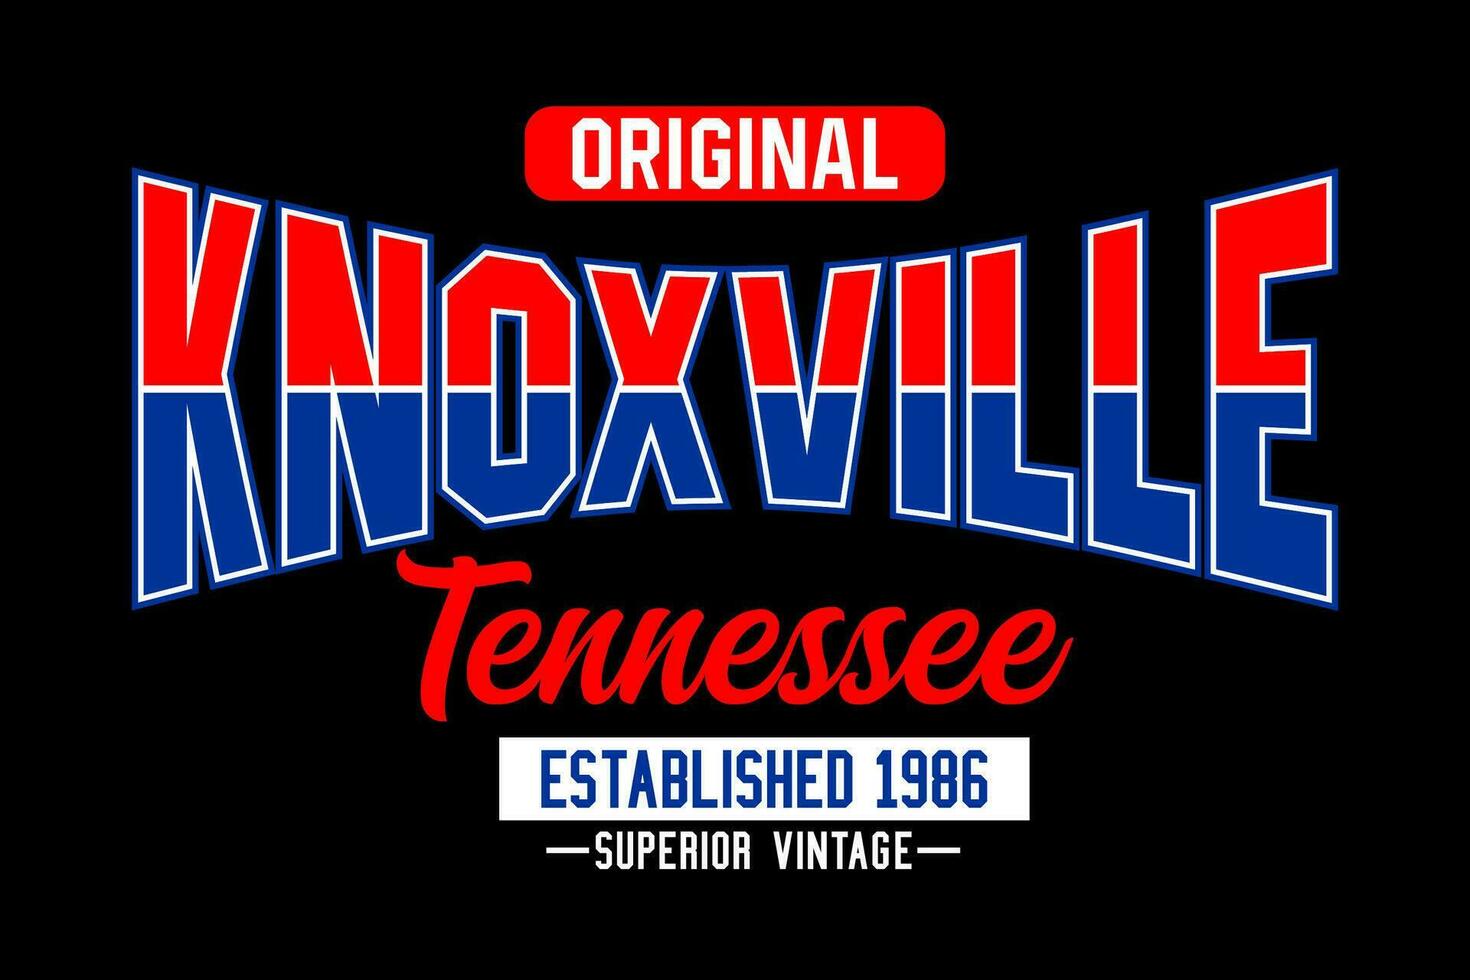 knoxville Tennessee Jahrgang Hochschule, zum drucken auf t Hemden usw. vektor